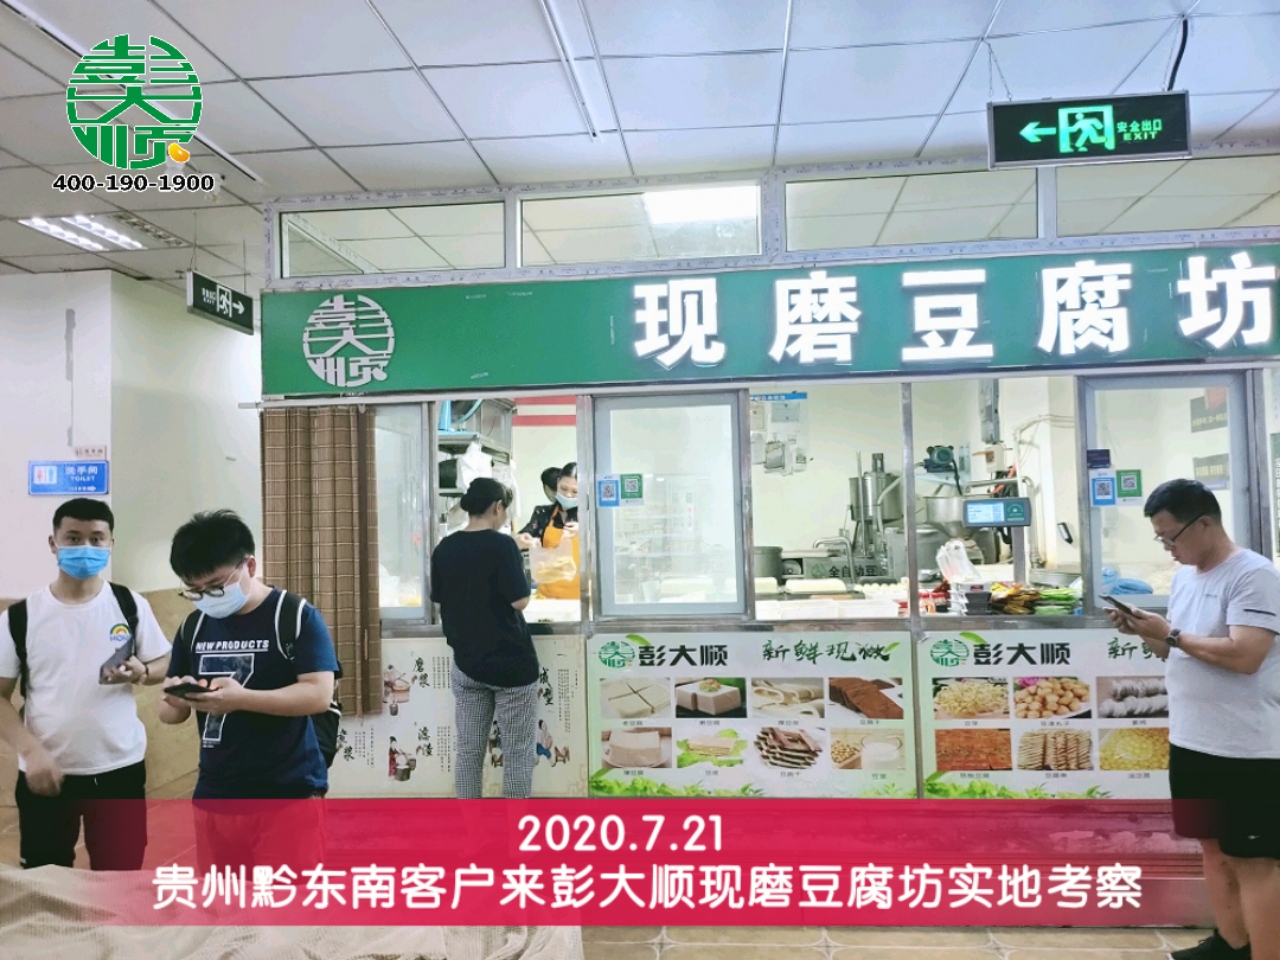 石老板購買彭大順全自動豆腐機輕松經營豆制品生意